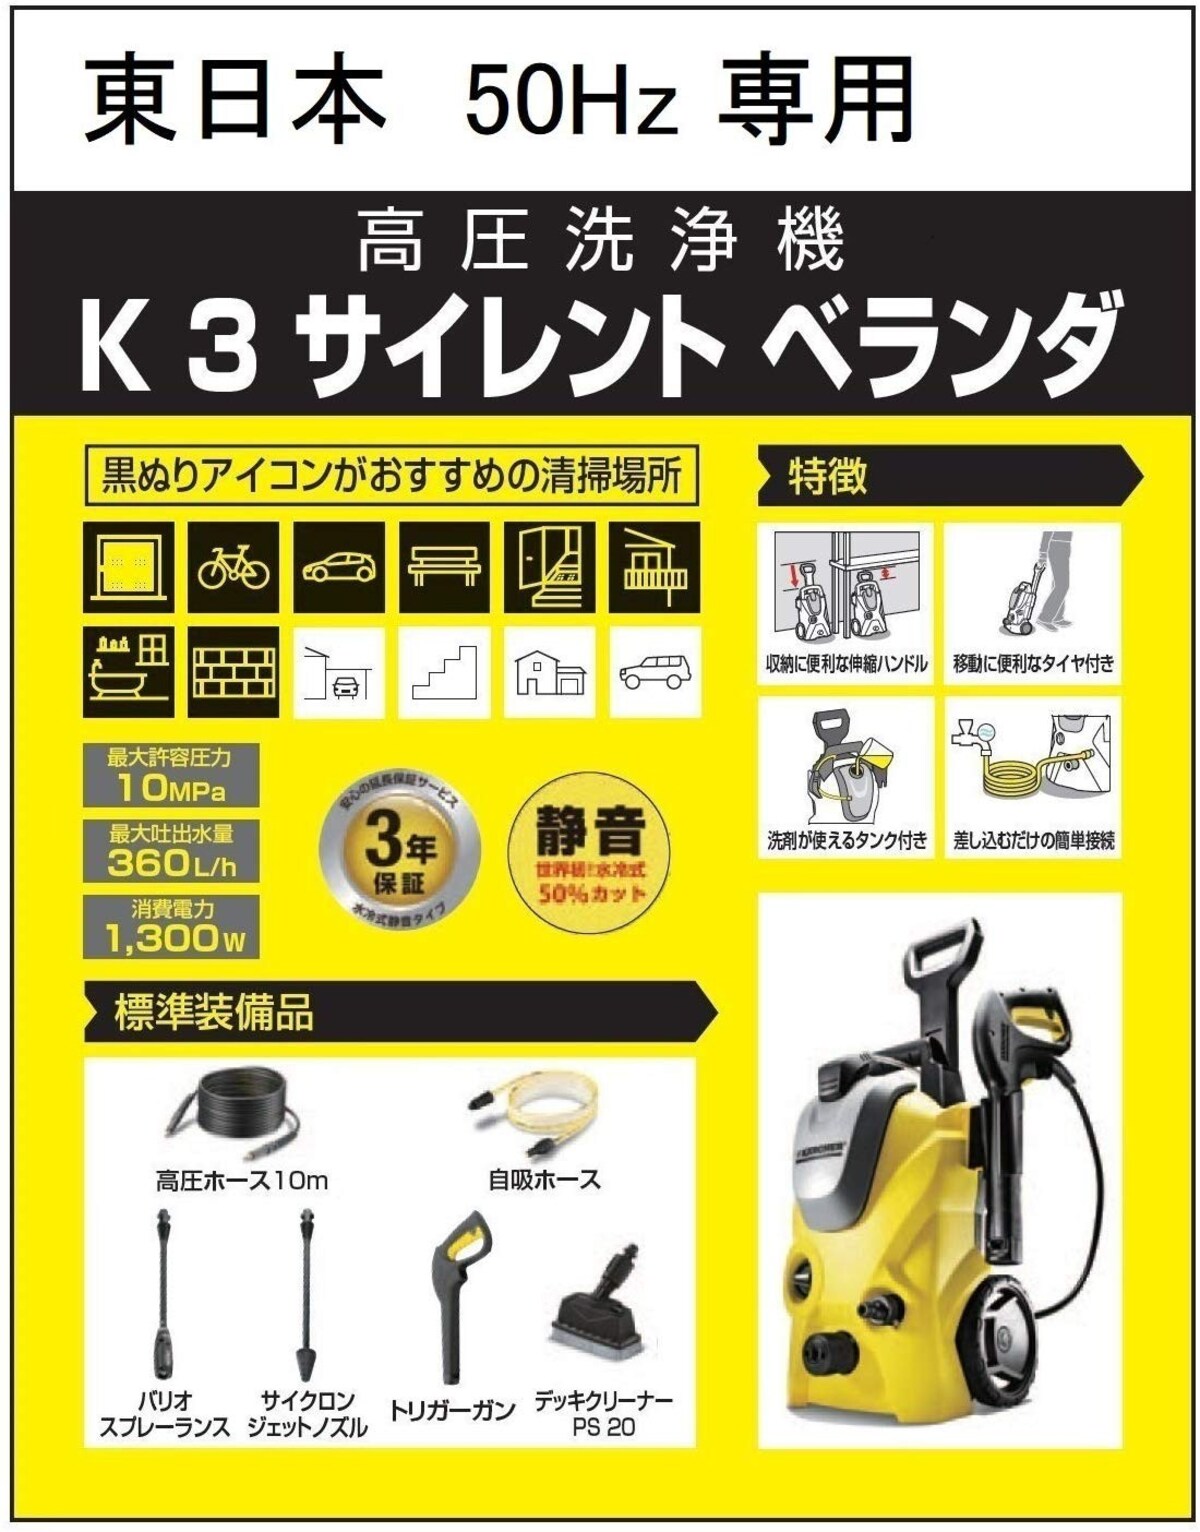  高圧洗浄機 K3    東日本 50Hz専用画像2 